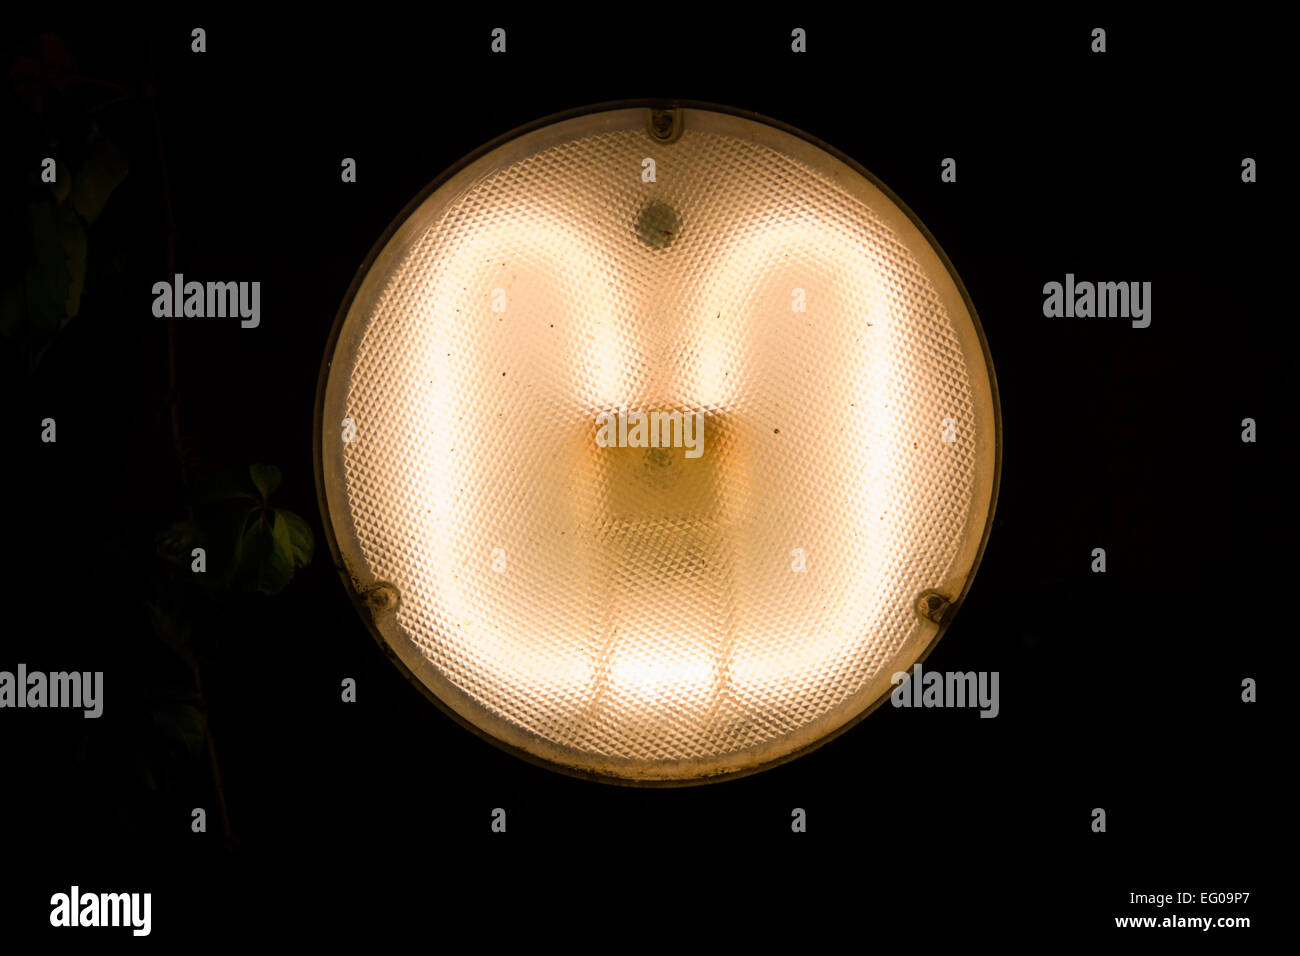 Eine Nacht-Fotografie erschossen in der Nacht, macht die Form des Lichts abheben. Stockfoto